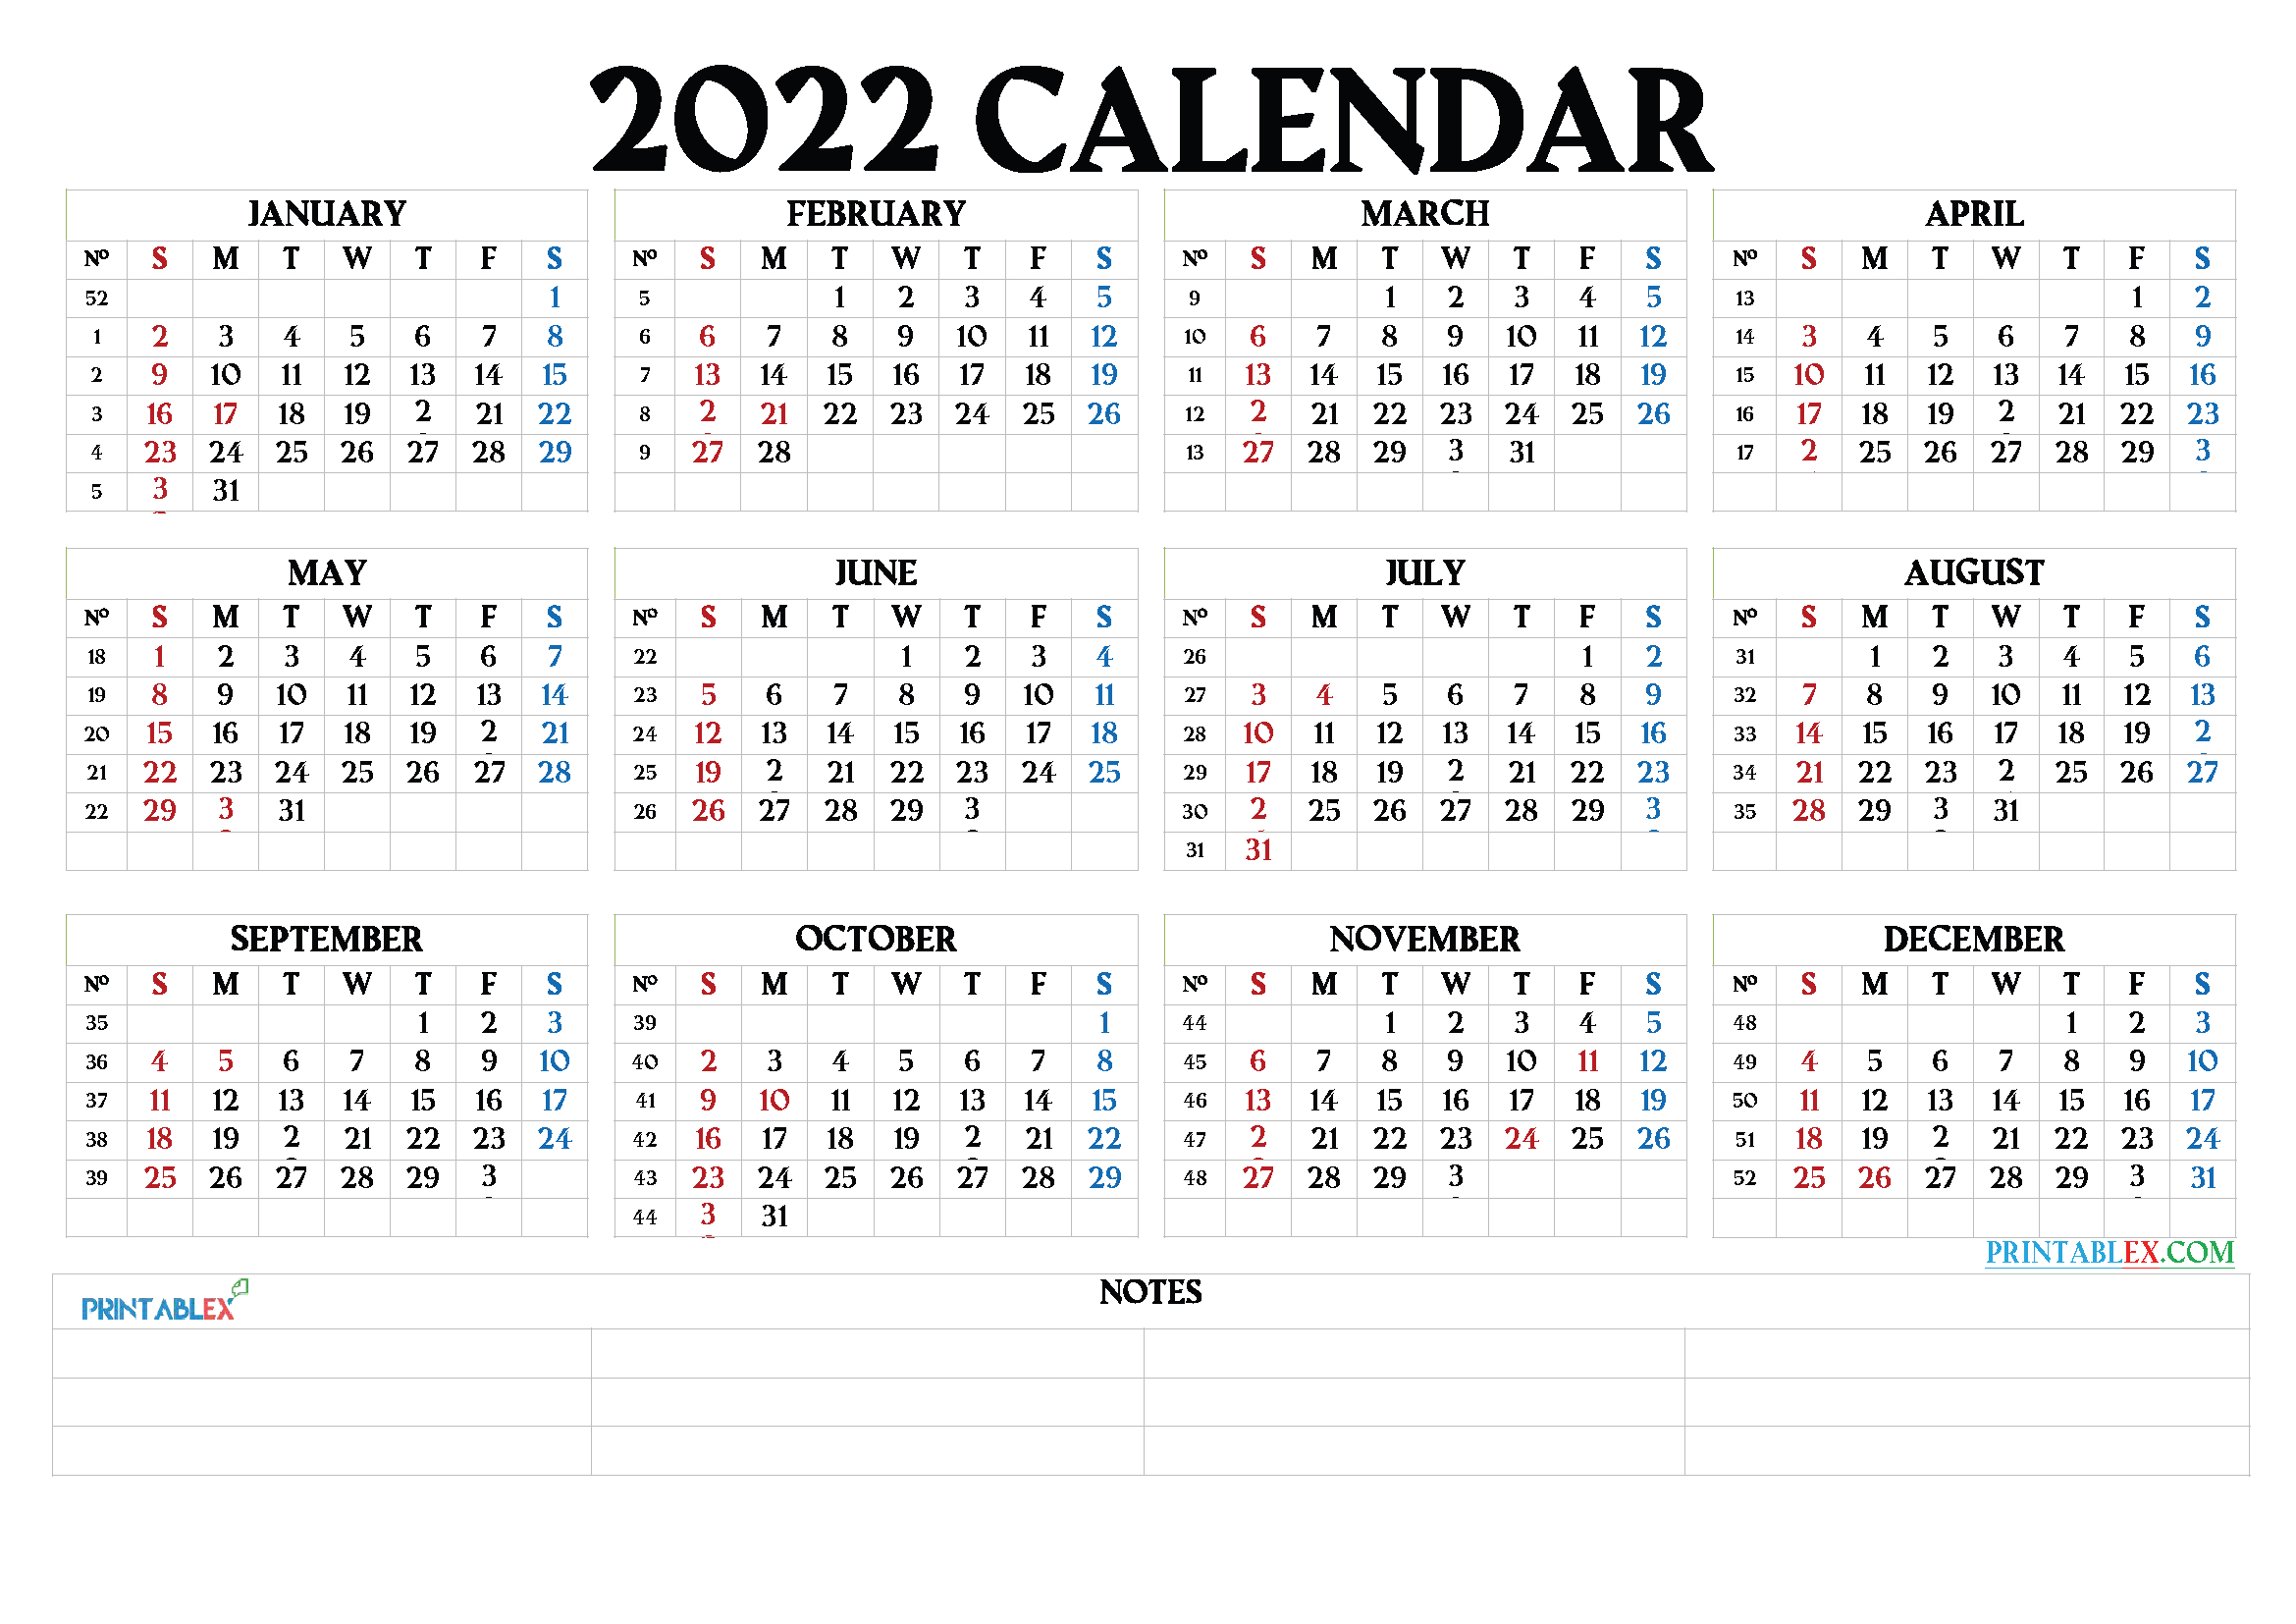 Free Printable 2022 Calendar By Month - 22Ytw64